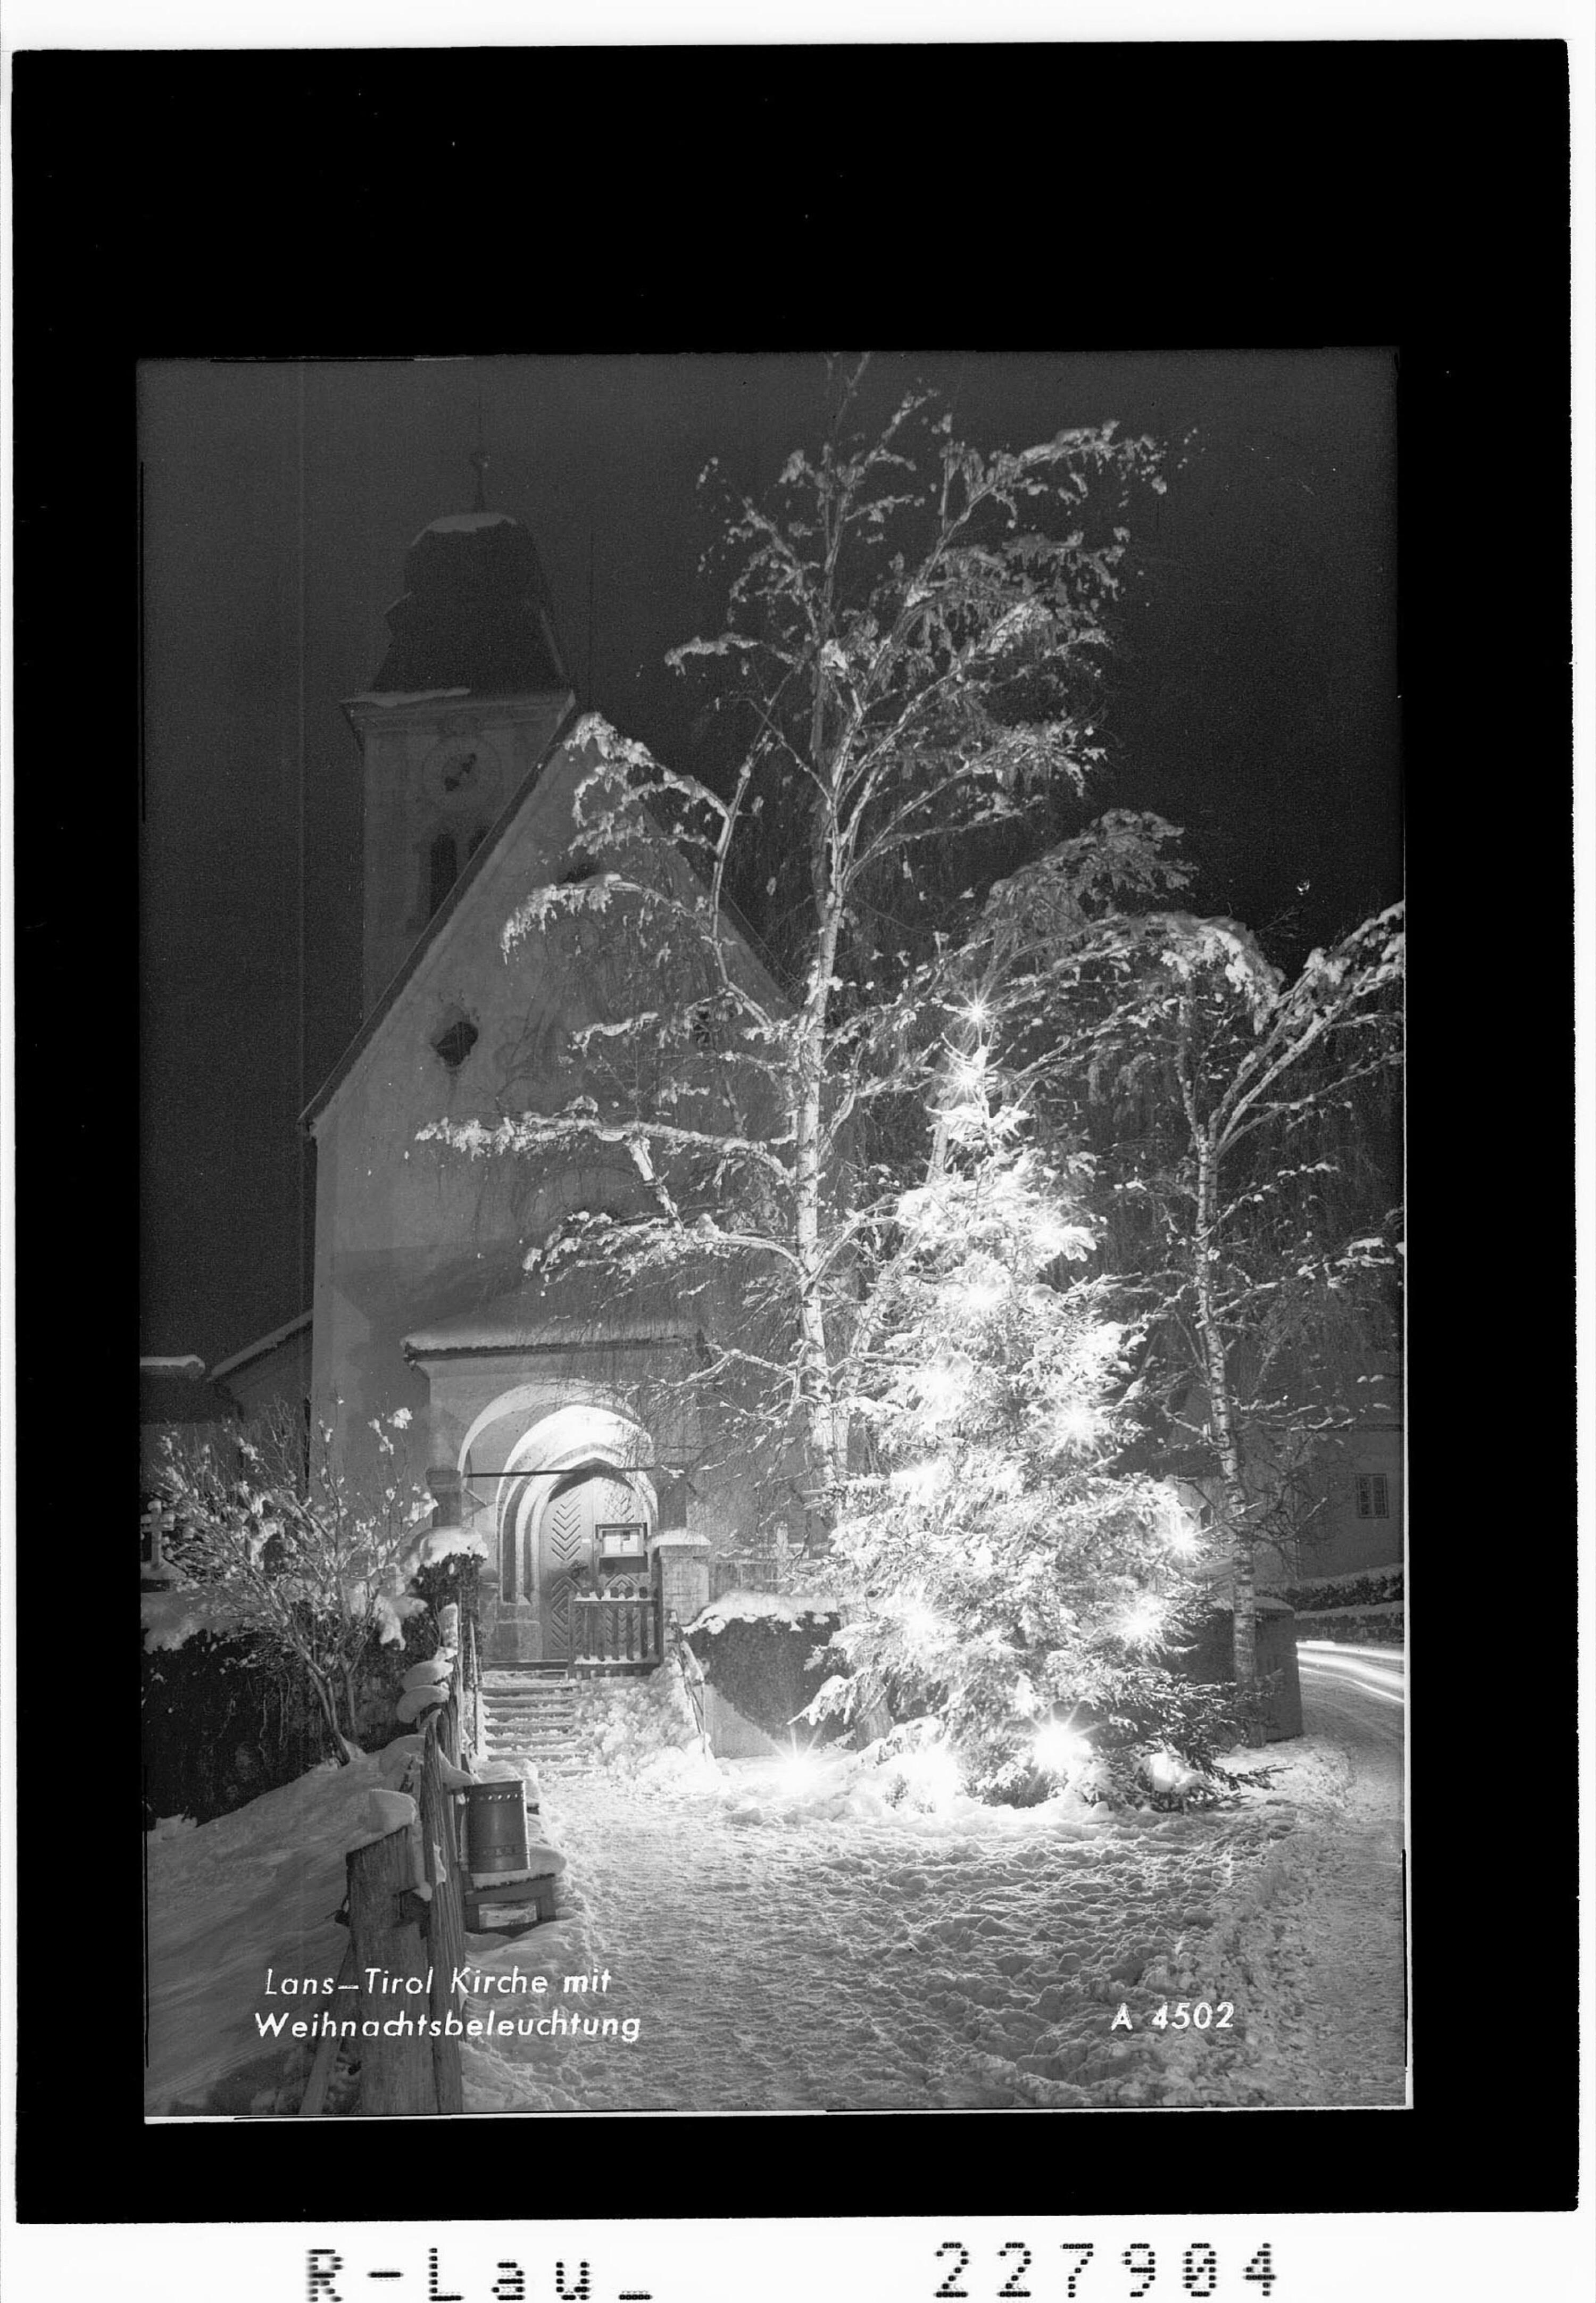 Lans - Tirol / Kirche mit Weihnachtsbeleuchtung></div>


    <hr>
    <div class=